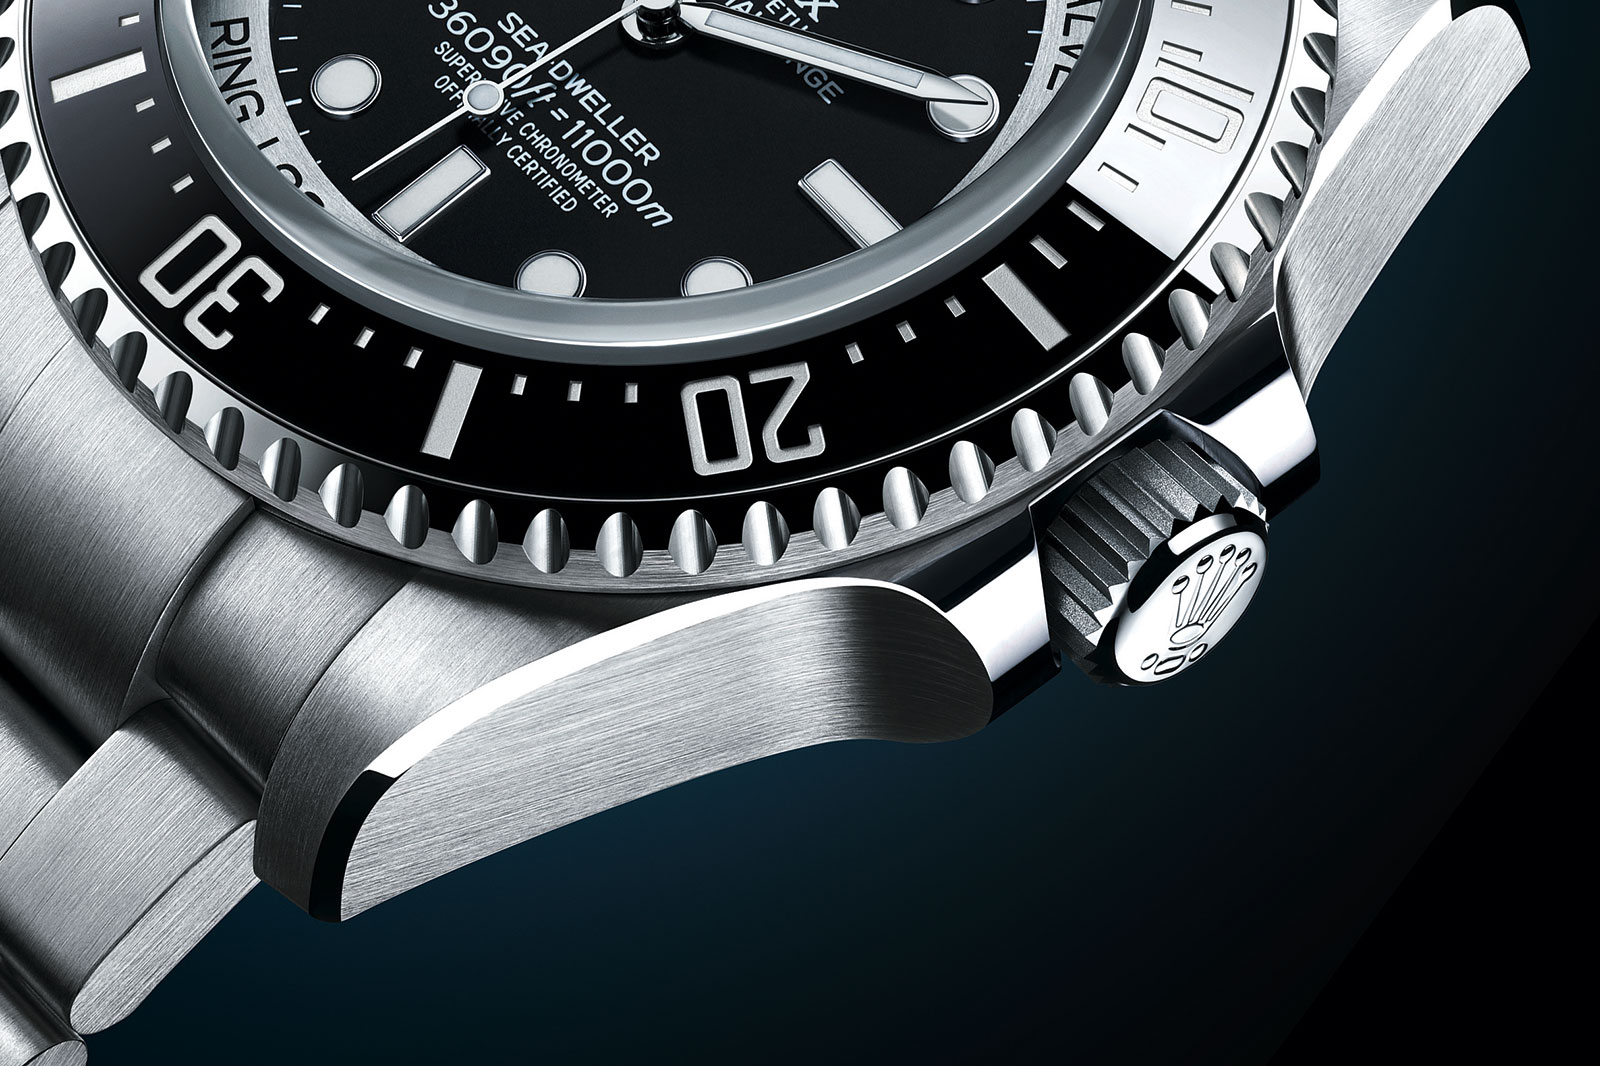 Rolex Deepsea Challenge Watch Goes To Bottom Of The Ocean